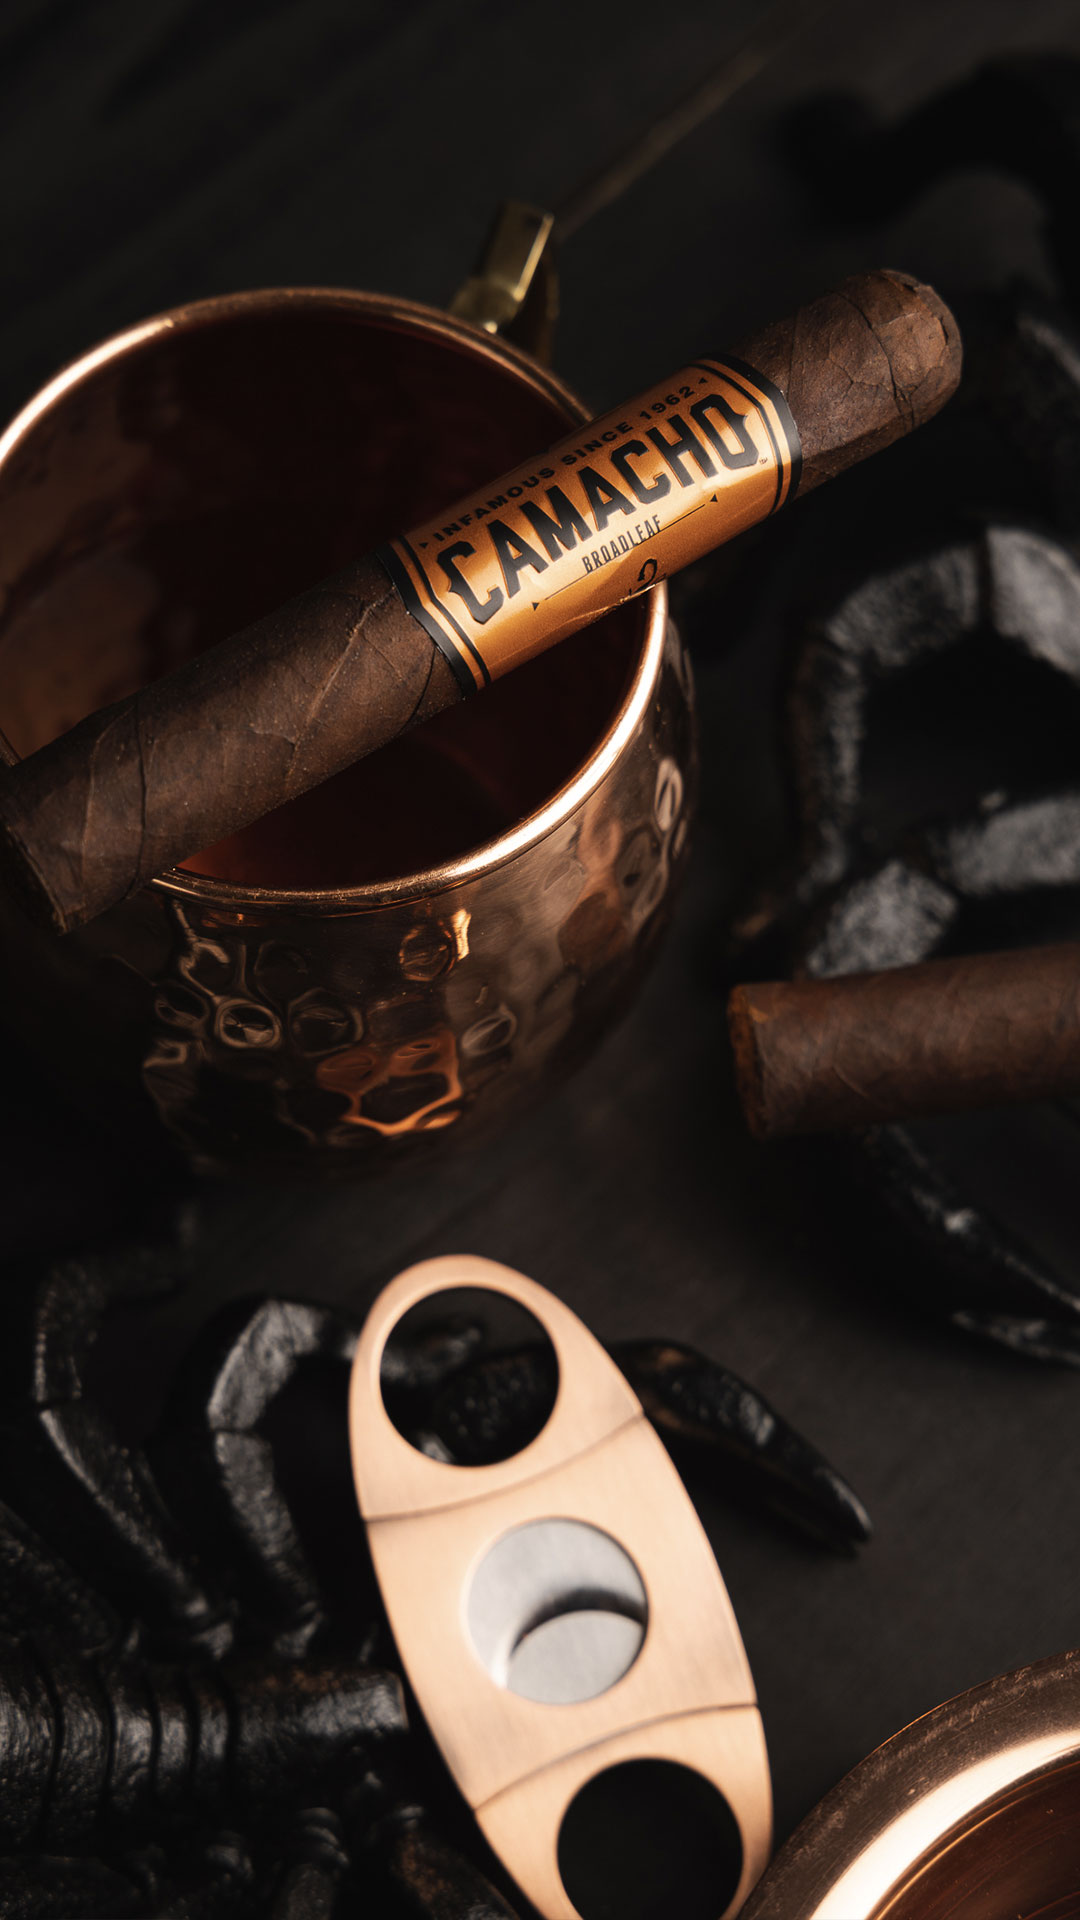 A Camacho Broadleaf cigar with a Honduran Broadleaf wrapper and a Honduran Broadleaf binder